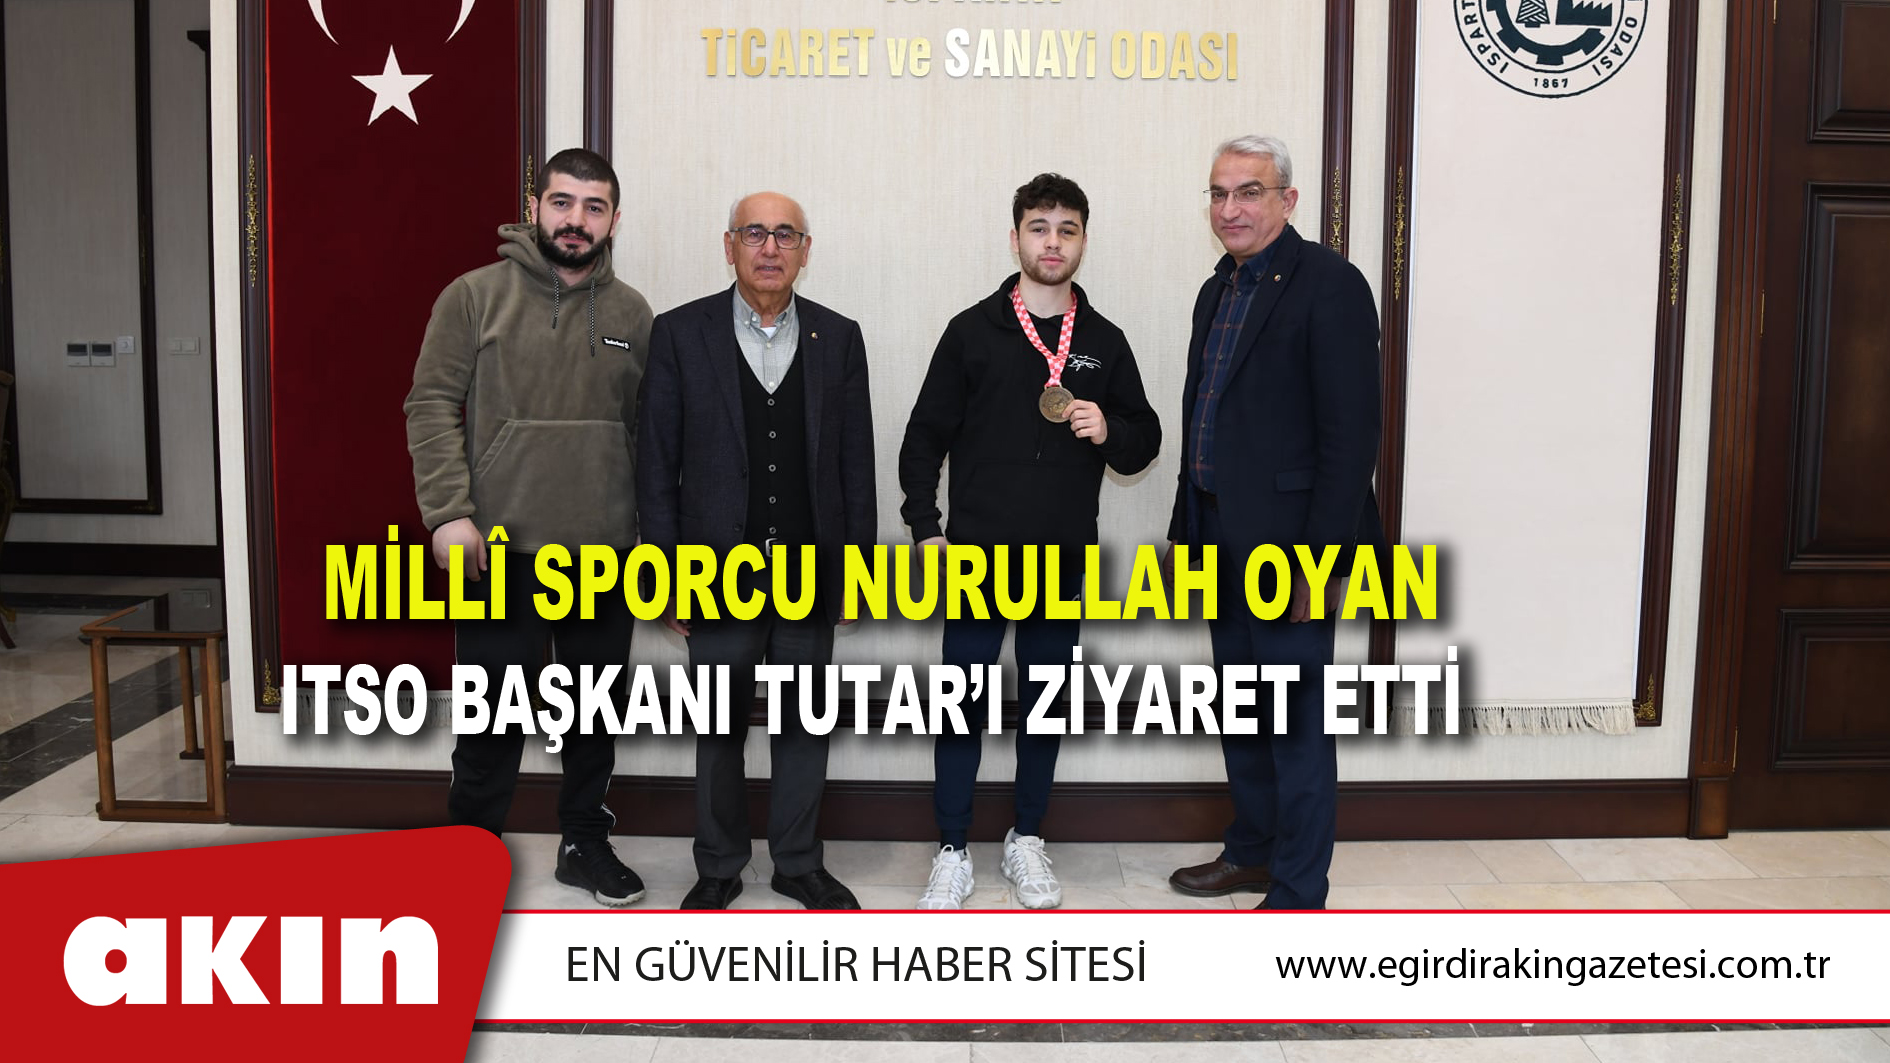 Milli Sporcu Nurullah Oyan ITSO Başkanı Tutar’ı Ziyaret Etti